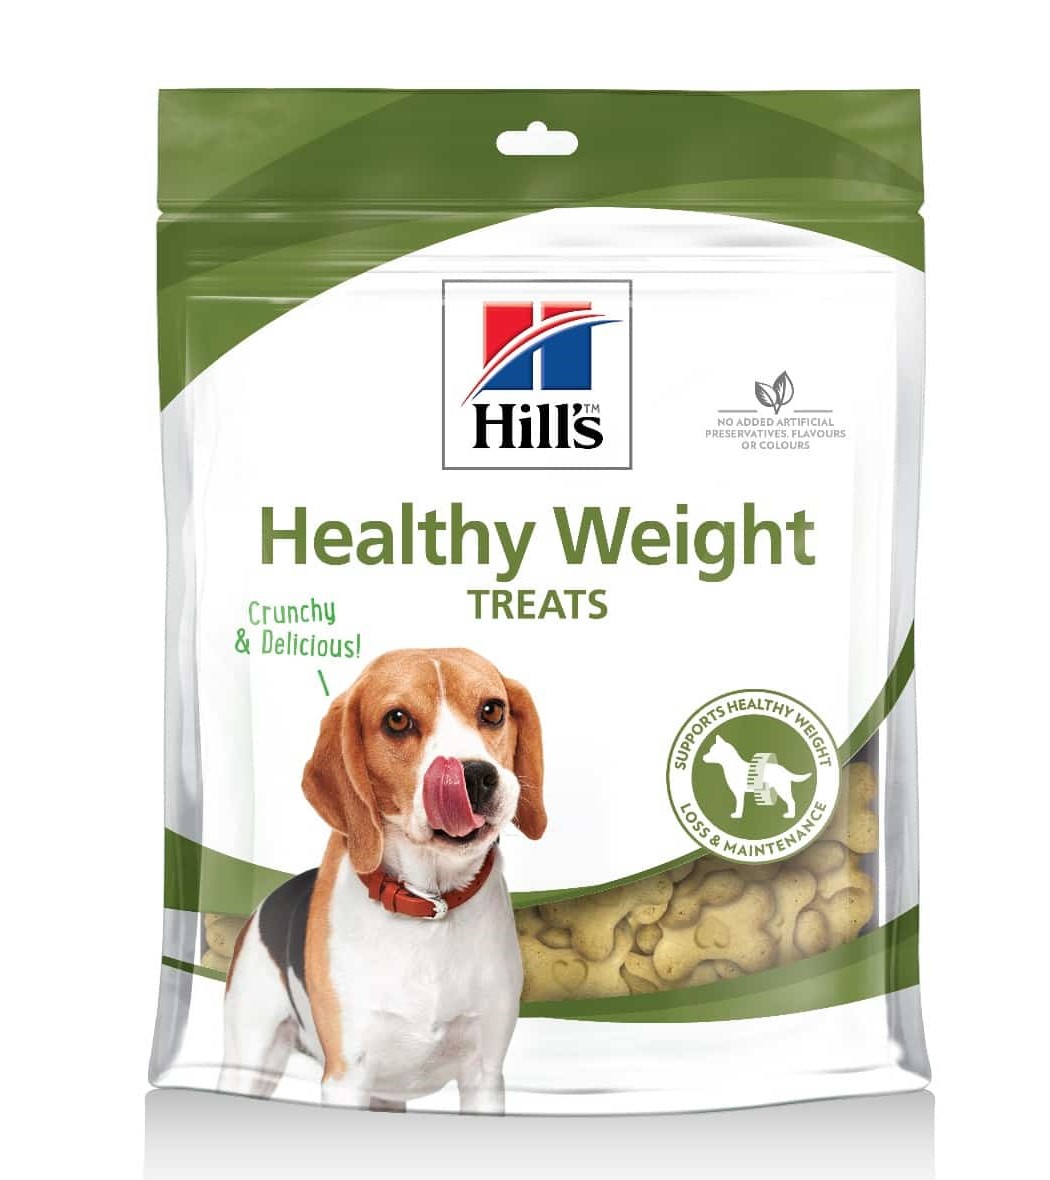 Hills Dog Treats Healthy Weight